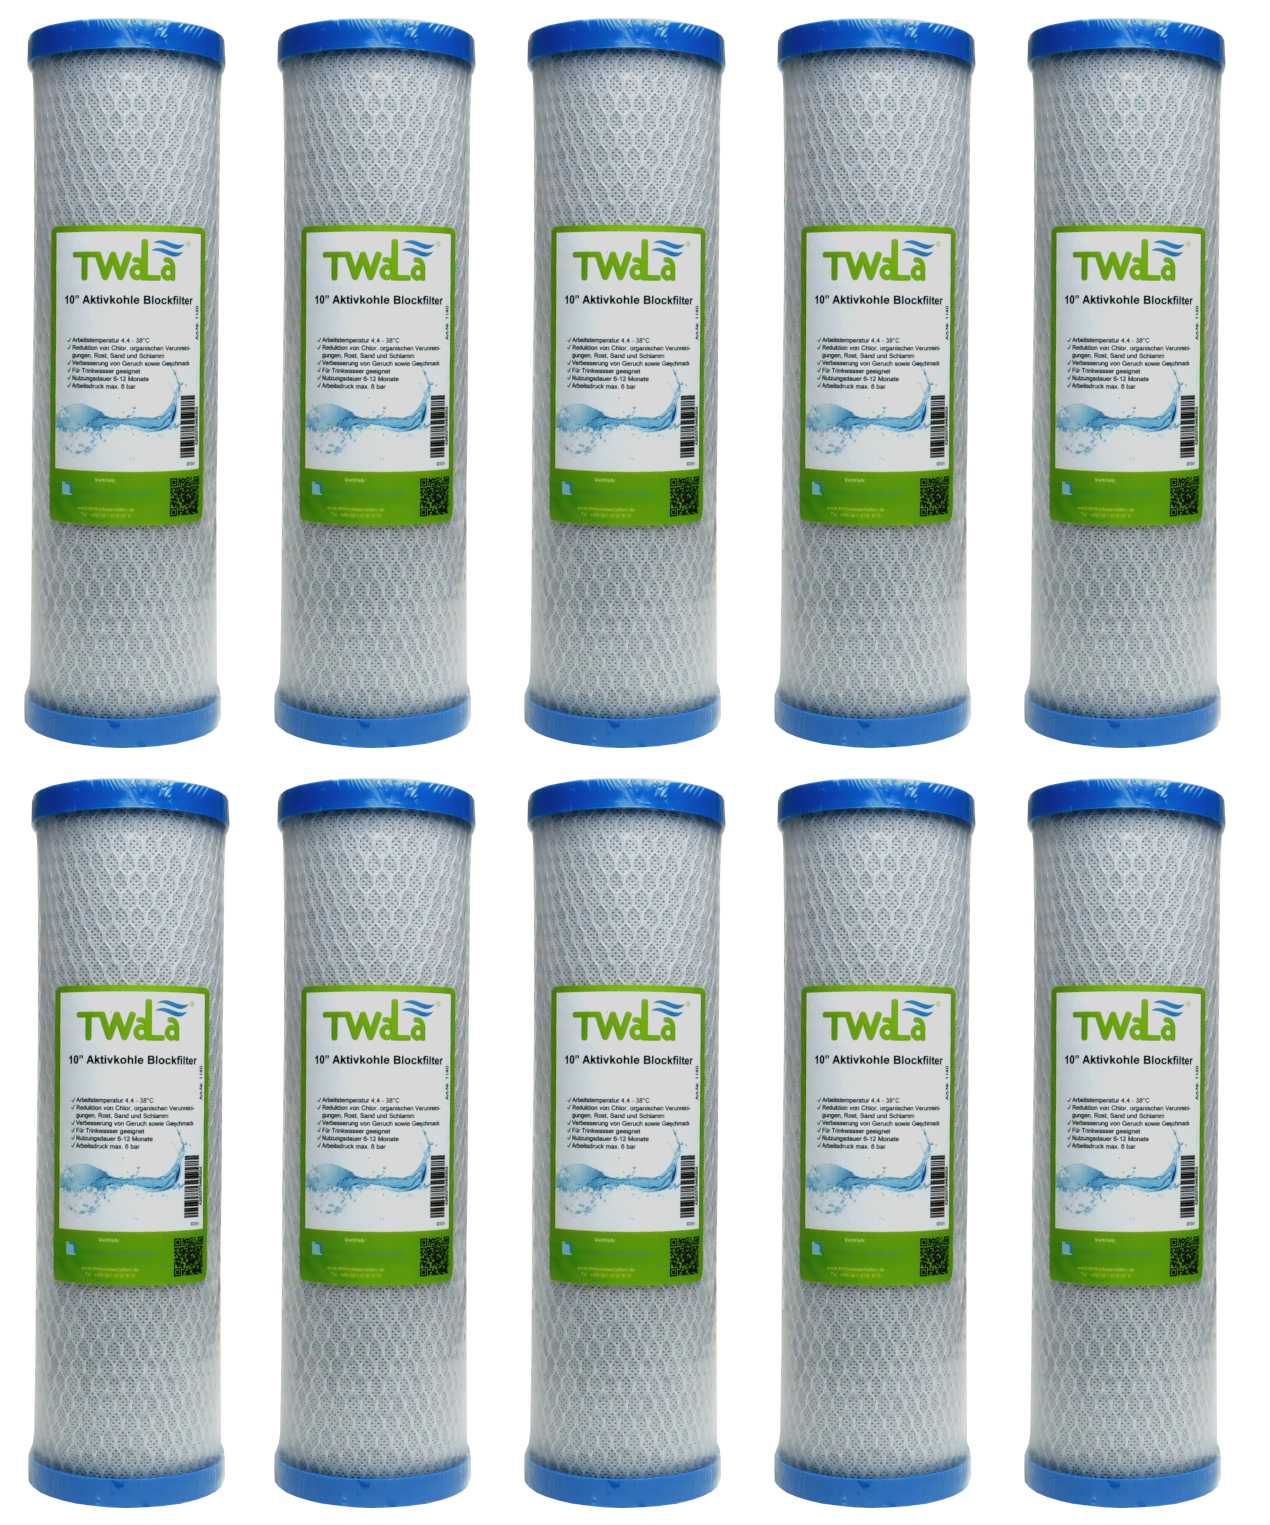 Set 10x Aktivkohleblock Trinkwasser Filter 10″ Wasserfilter für  Umkehrosmose – TWaLa Wasserfilter